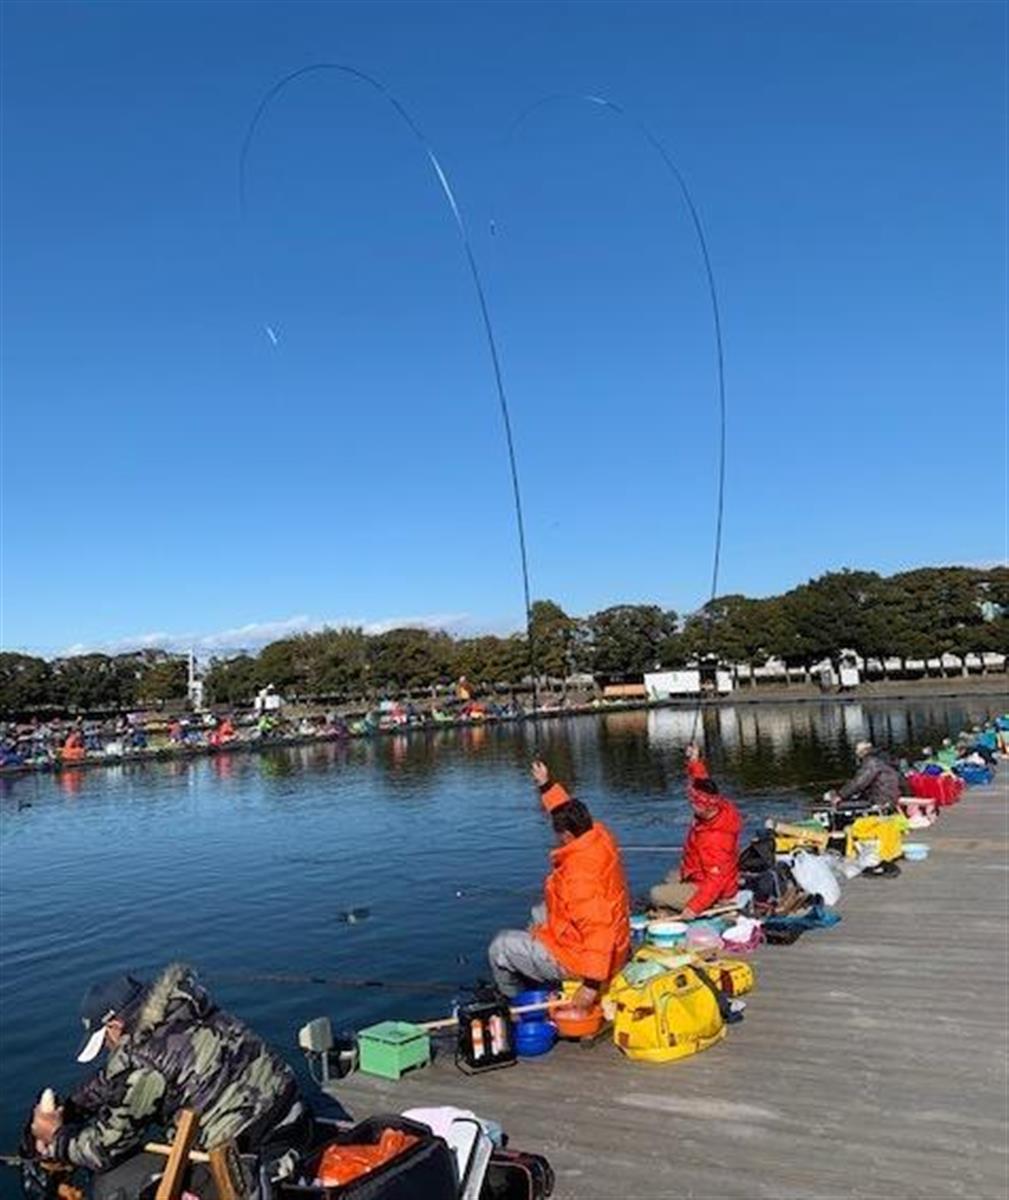 ヘラブナ 超大型狙え 大型管理釣り場で初釣り 埼玉県羽生市 椎の木湖 1 3ページ サンスポ